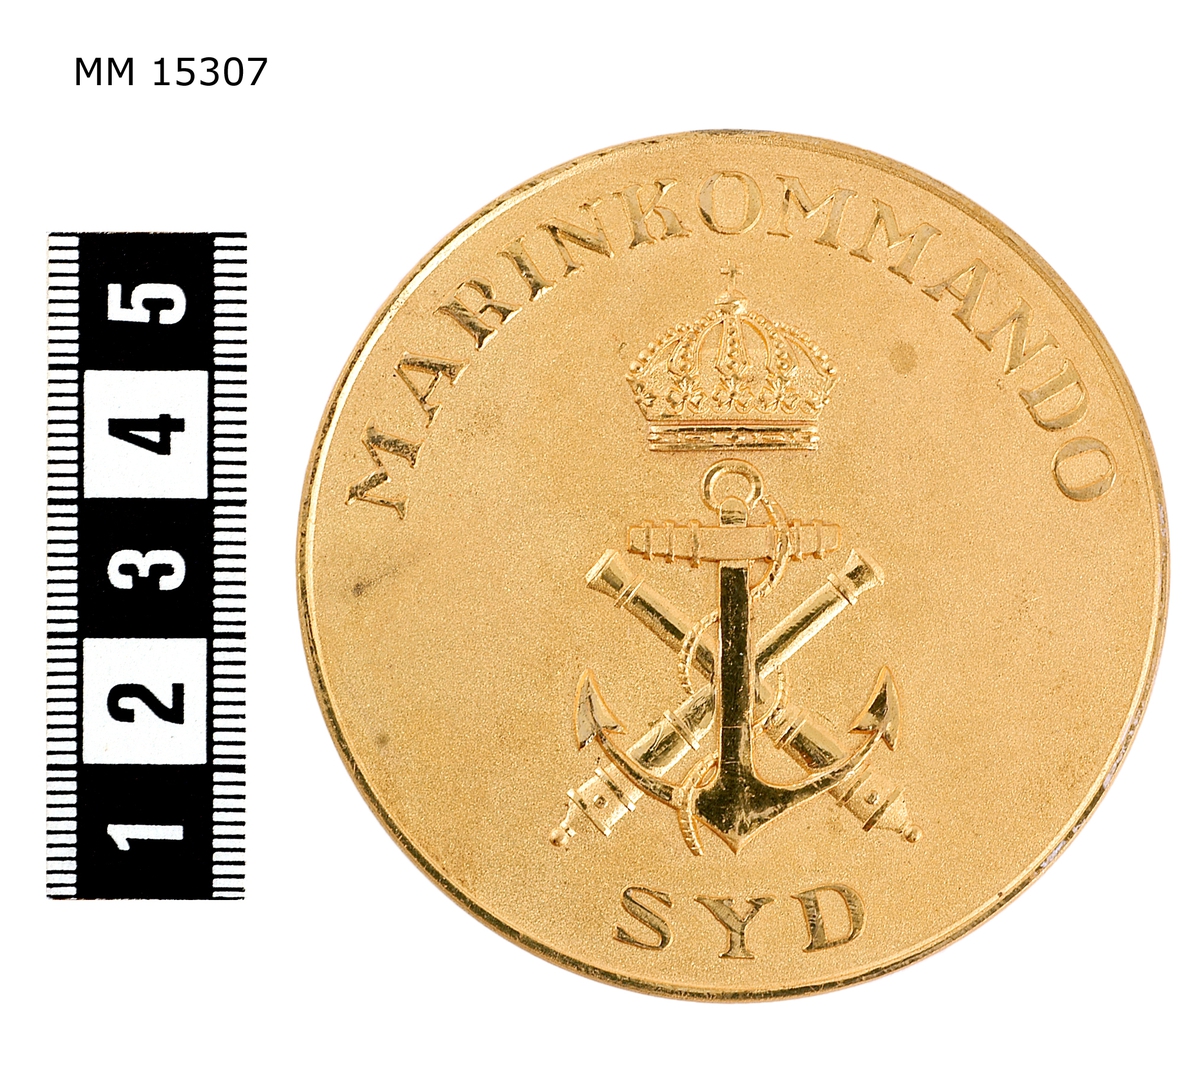 Rund medalj. På framsidan Marinens emblem, krönt med en sluten kunglig krona. Över står: MARINKOMMANDO SYD. På baksidan, en lagerkrans, öppen upptill. Medaljen ligger i etui (Beskrivning på etui saknas)